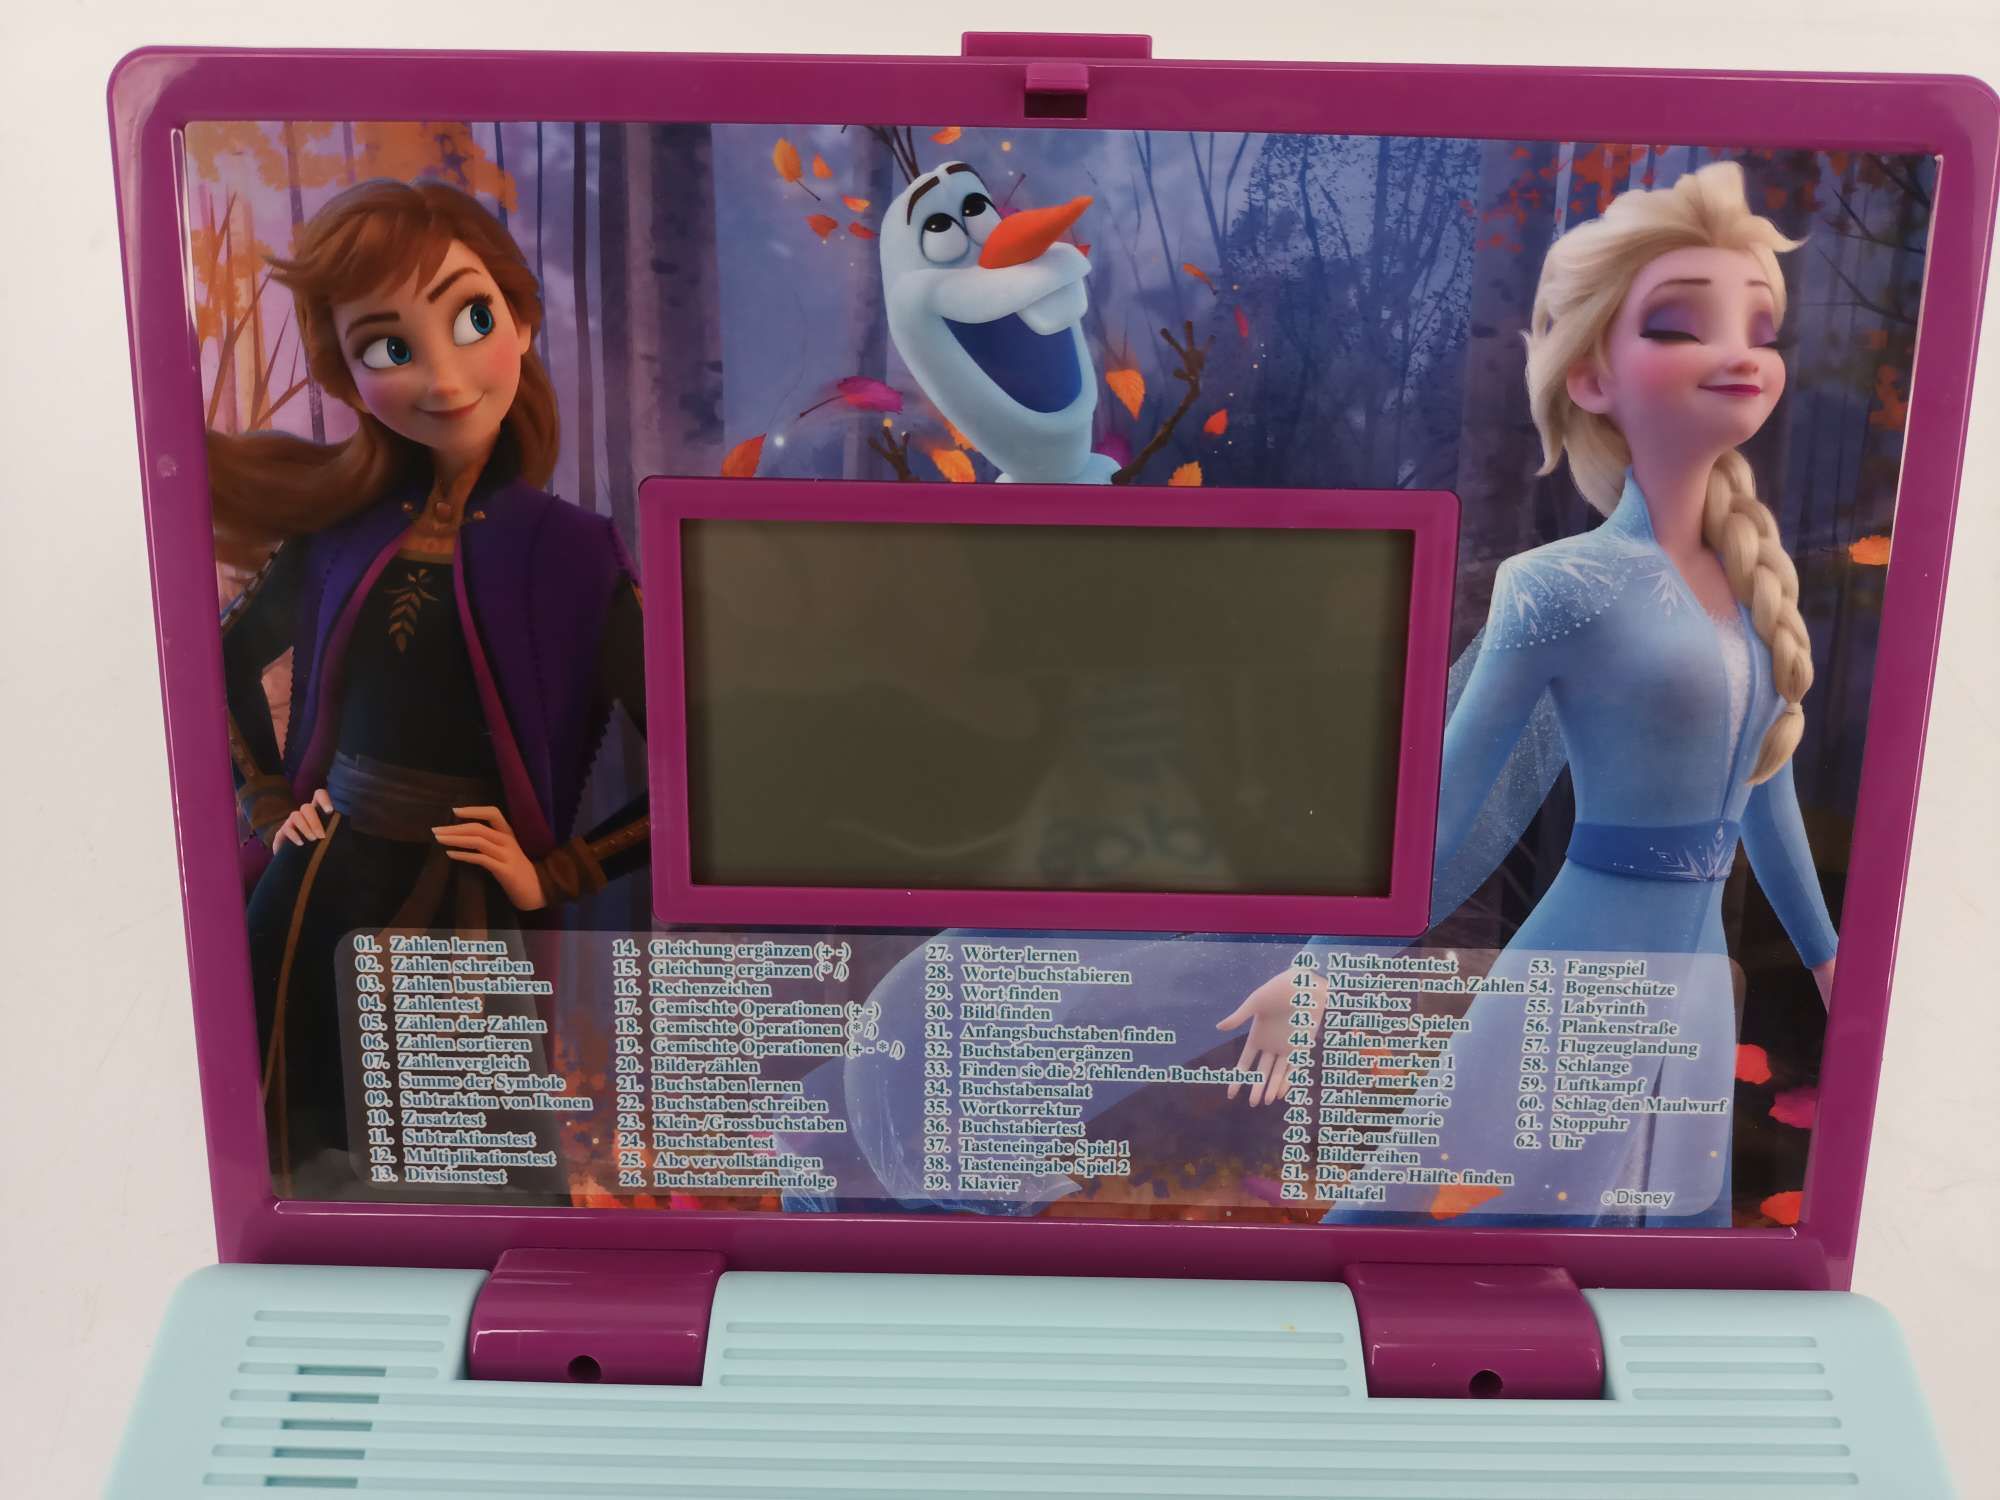 Lexibook JC598FZi3 Disney Frozen 2-jęz. laptop do celów edukacyjnych